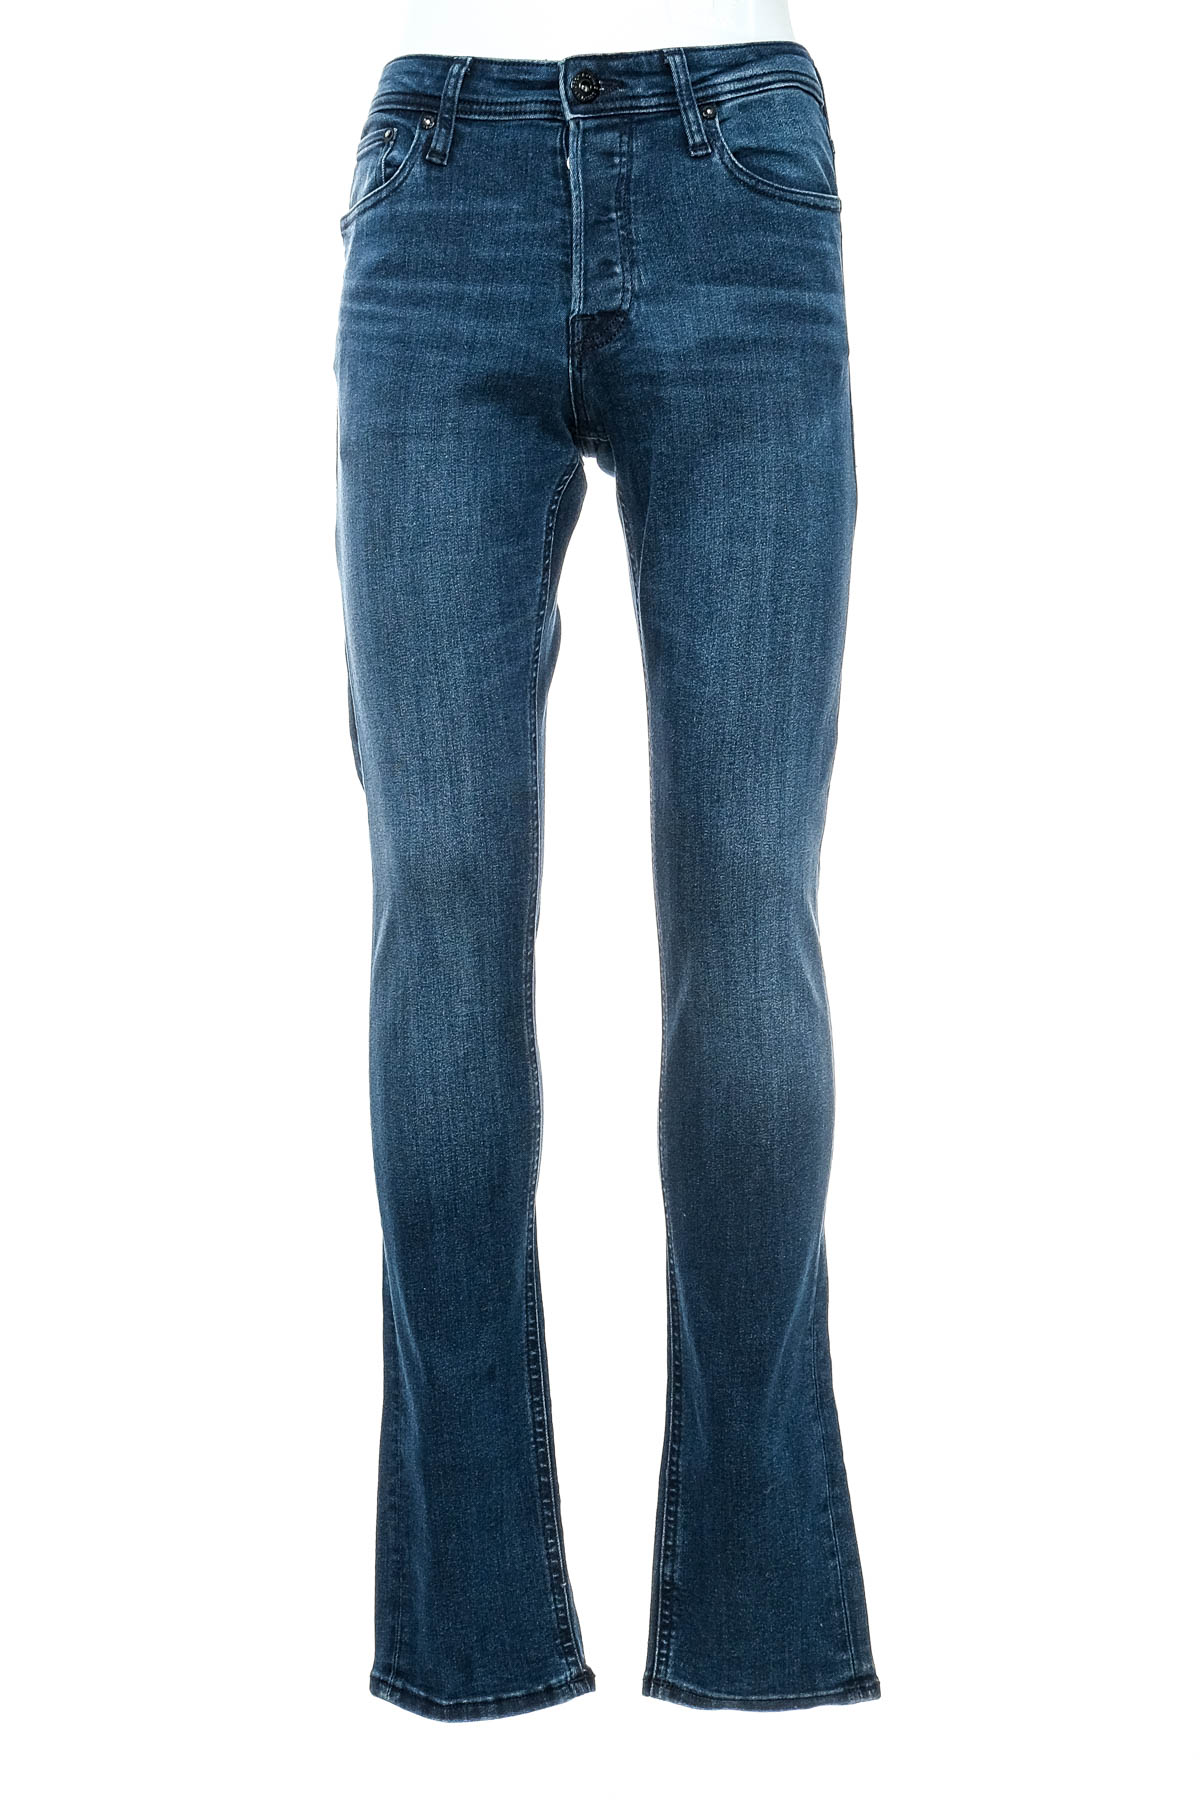 Men's jeans - JACK & JONES - 0